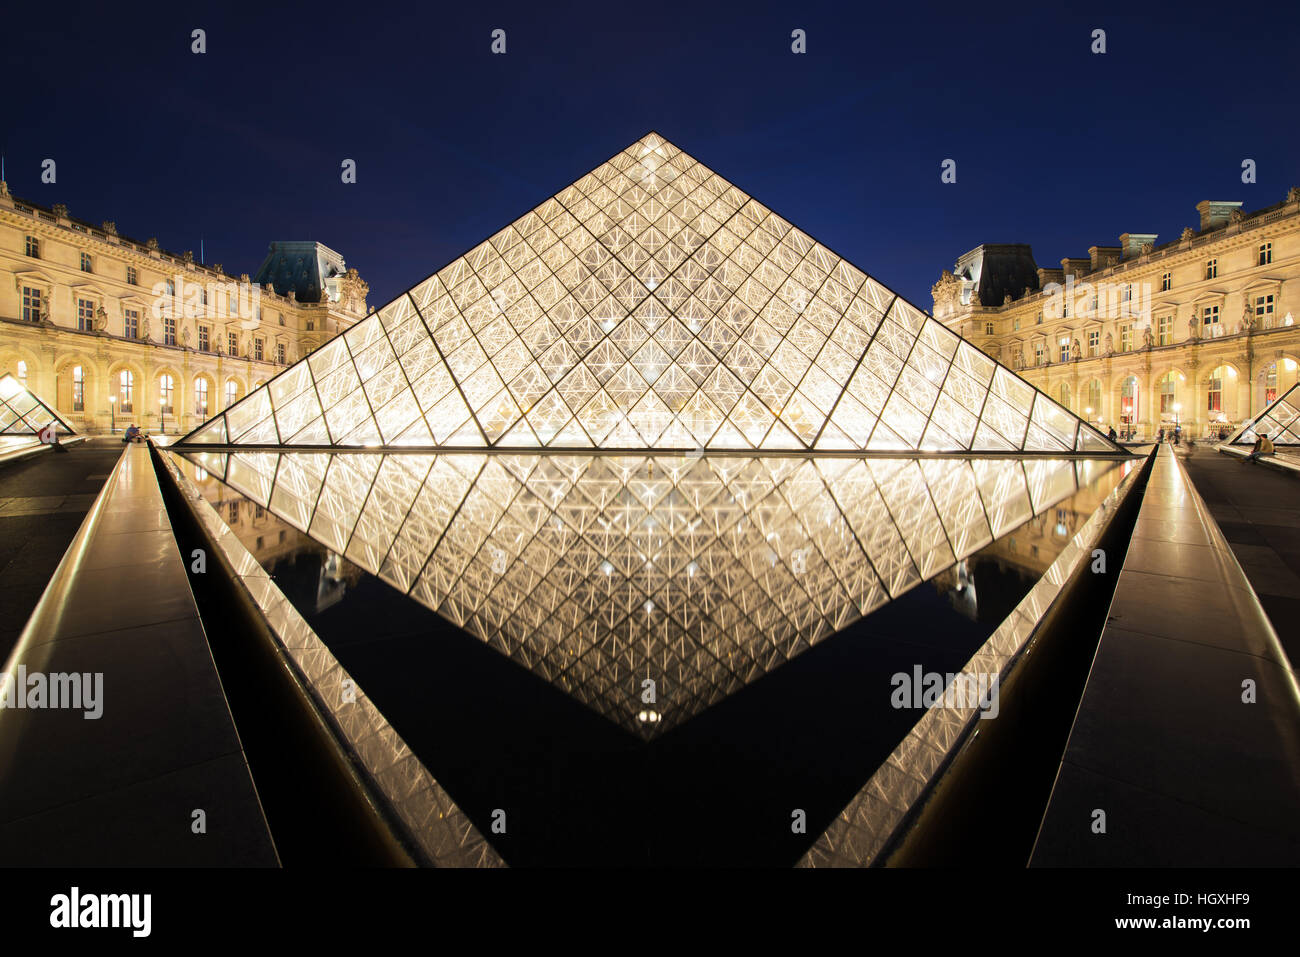 Le musée du Louvre est l'un des plus grands musées du monde et un monument historique. Un monument central de Paris, France. Banque D'Images